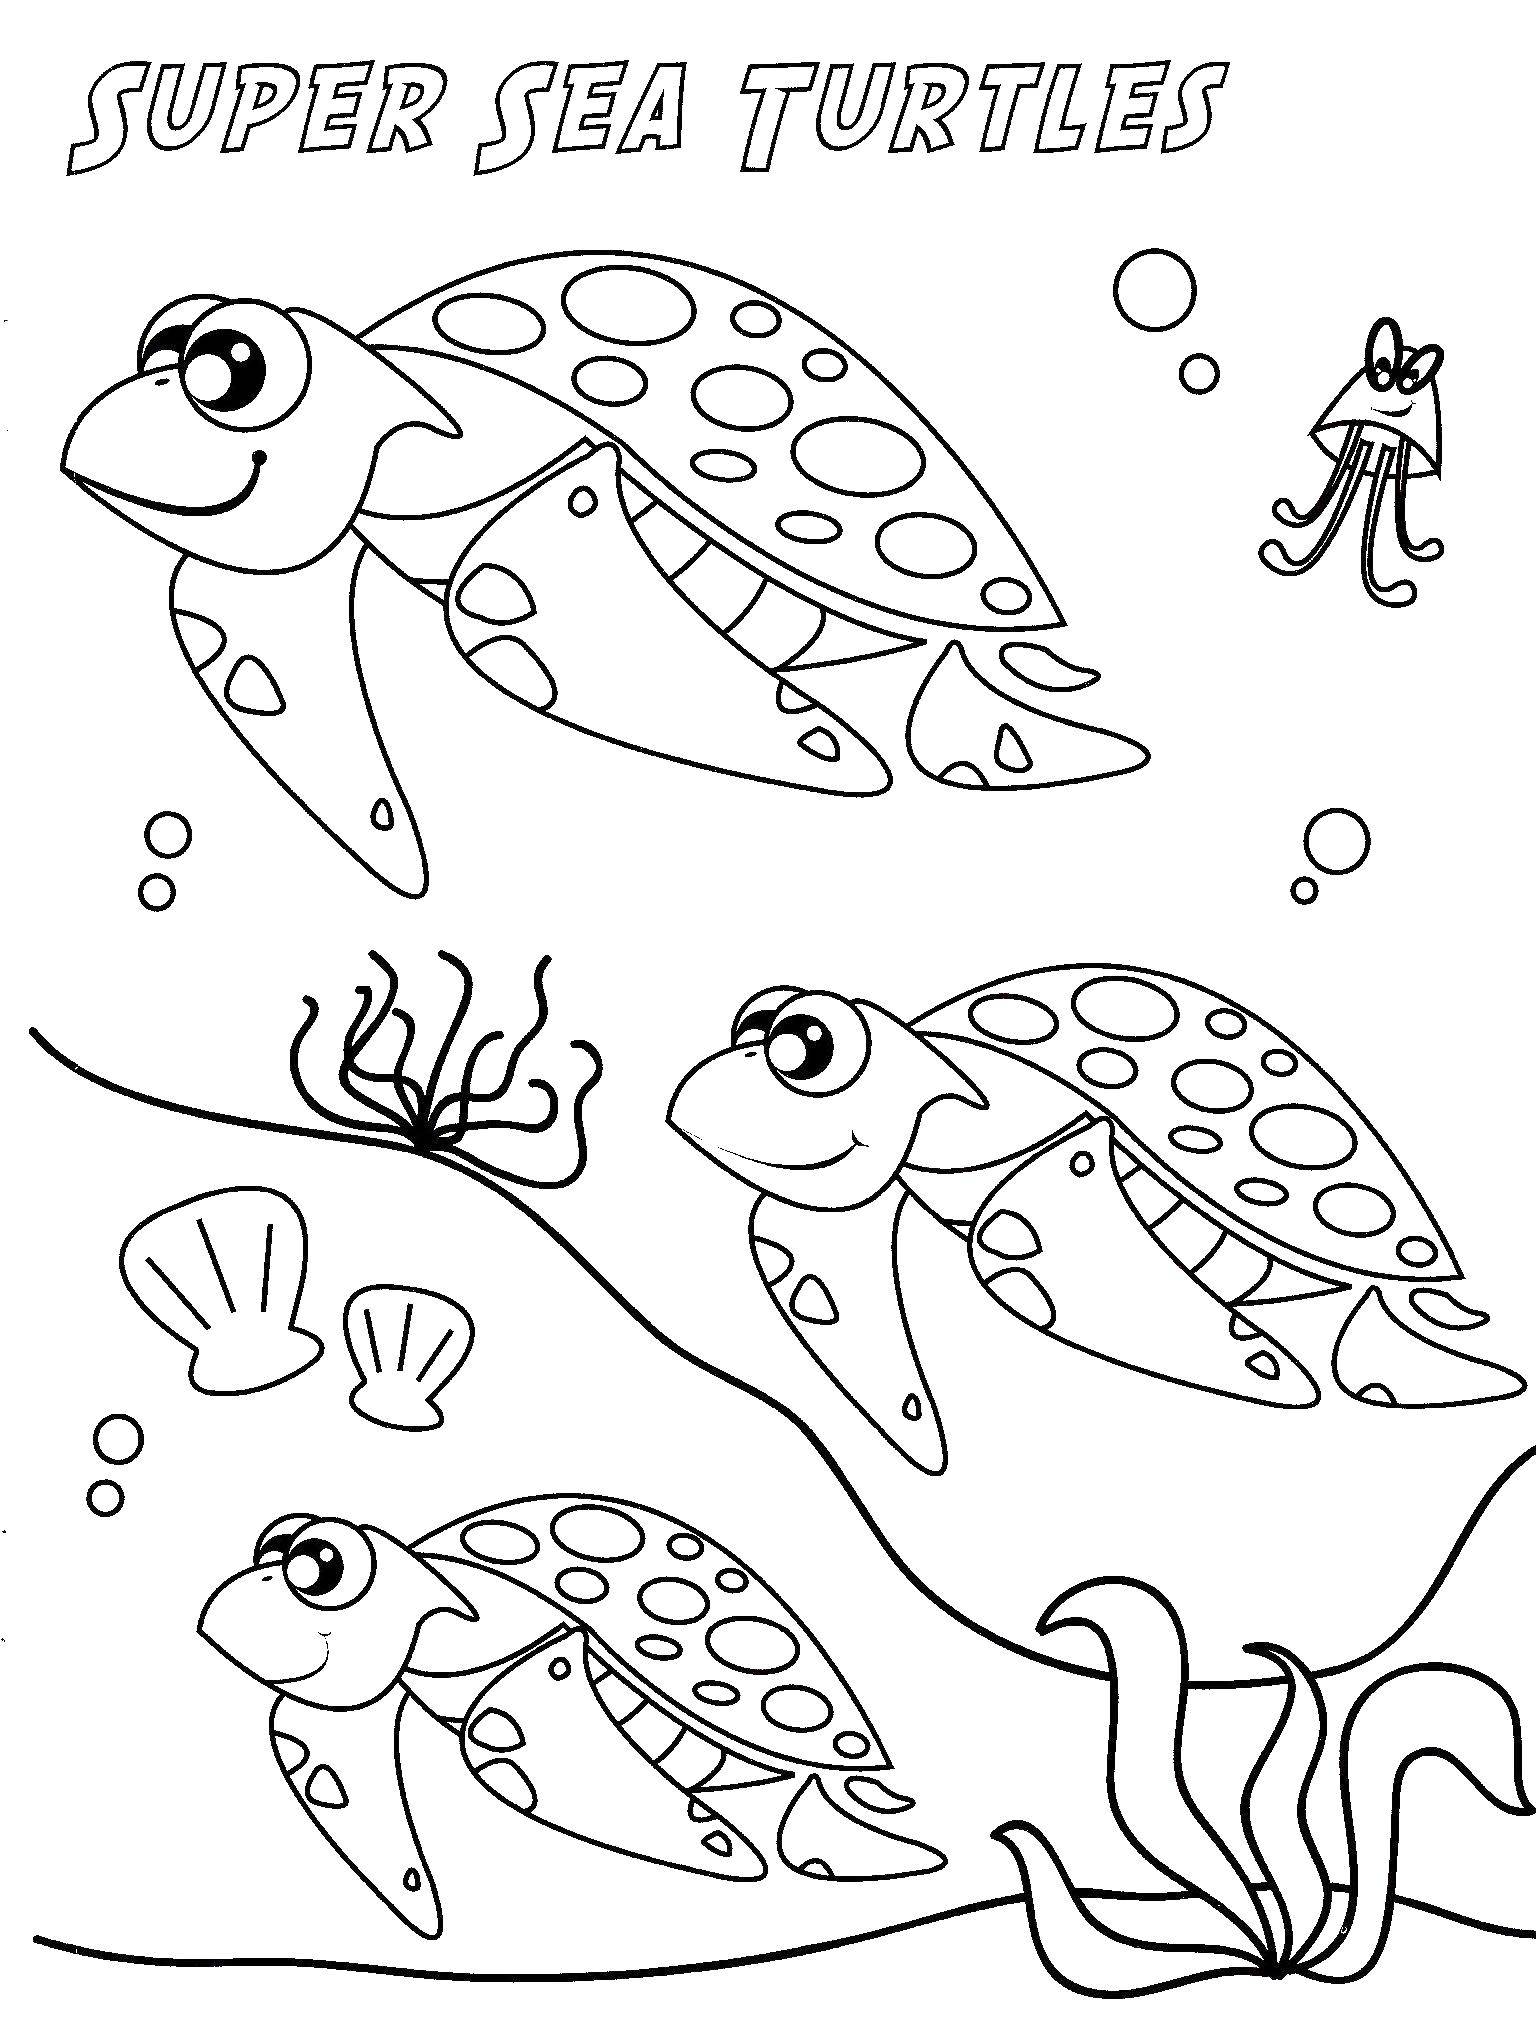   Супер морские черепахи